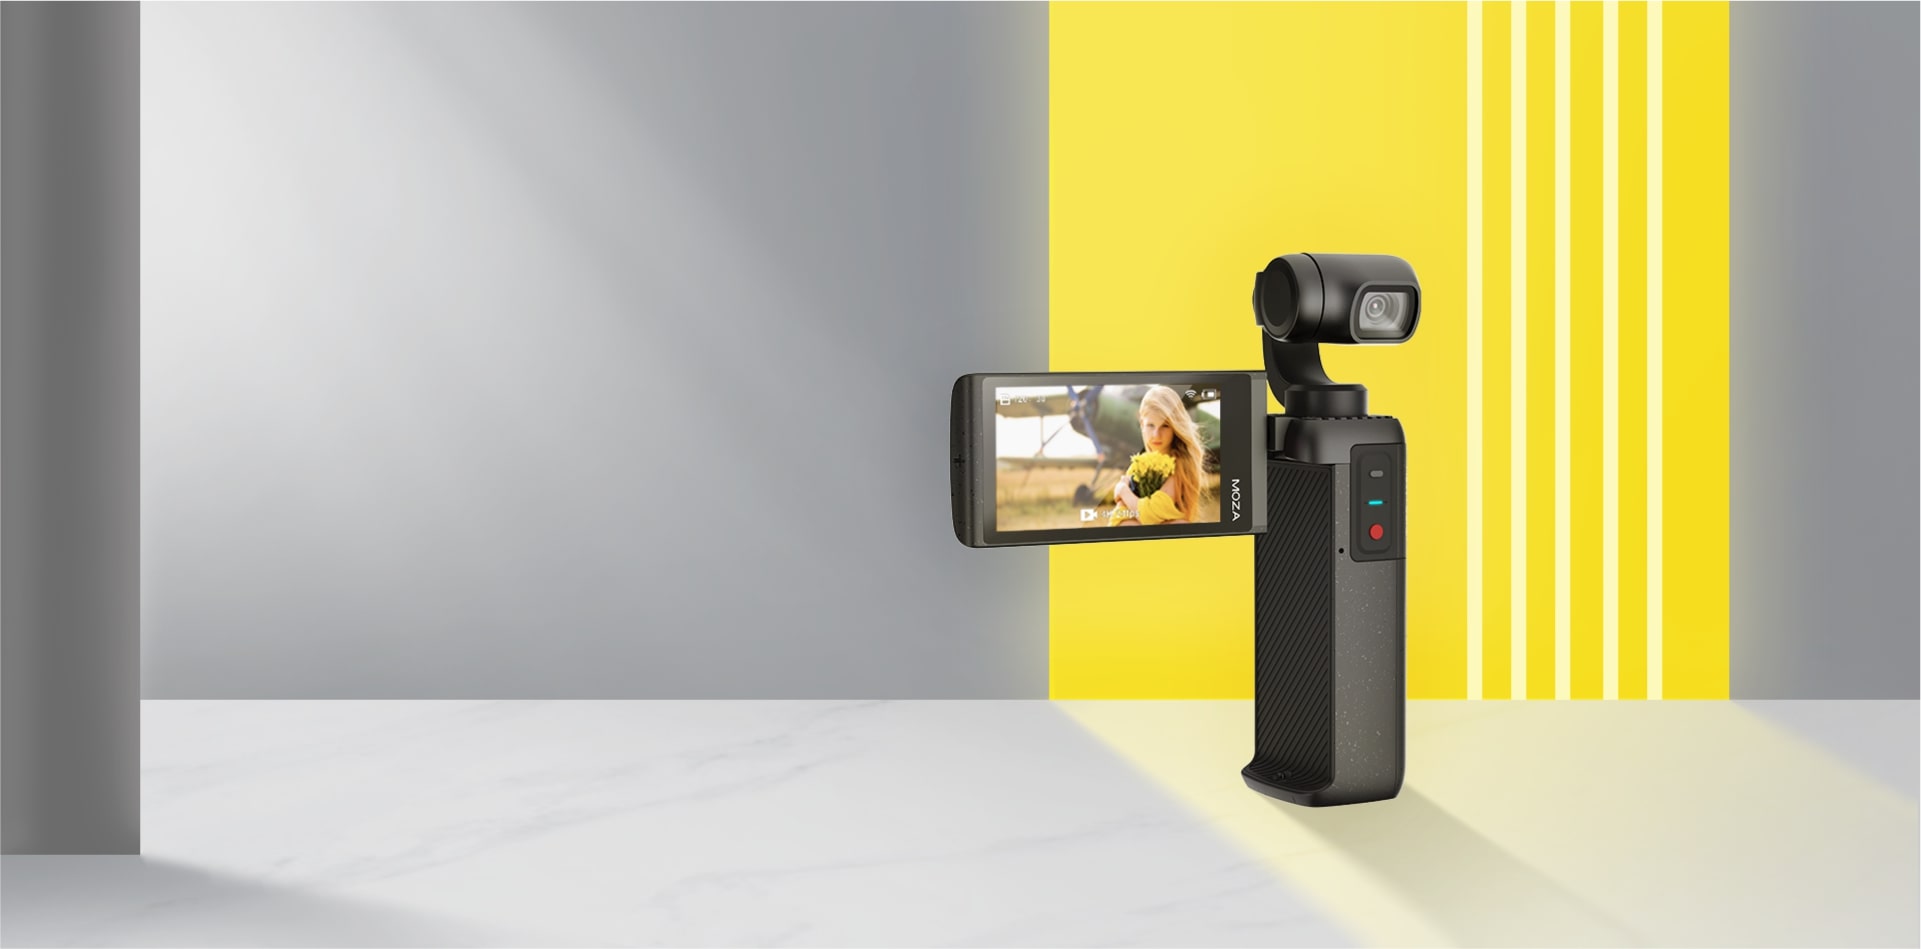 Moza ra mắt camera 4K kiểu dáng nhỏ gọn, đối thủ của DJI Pocket 2